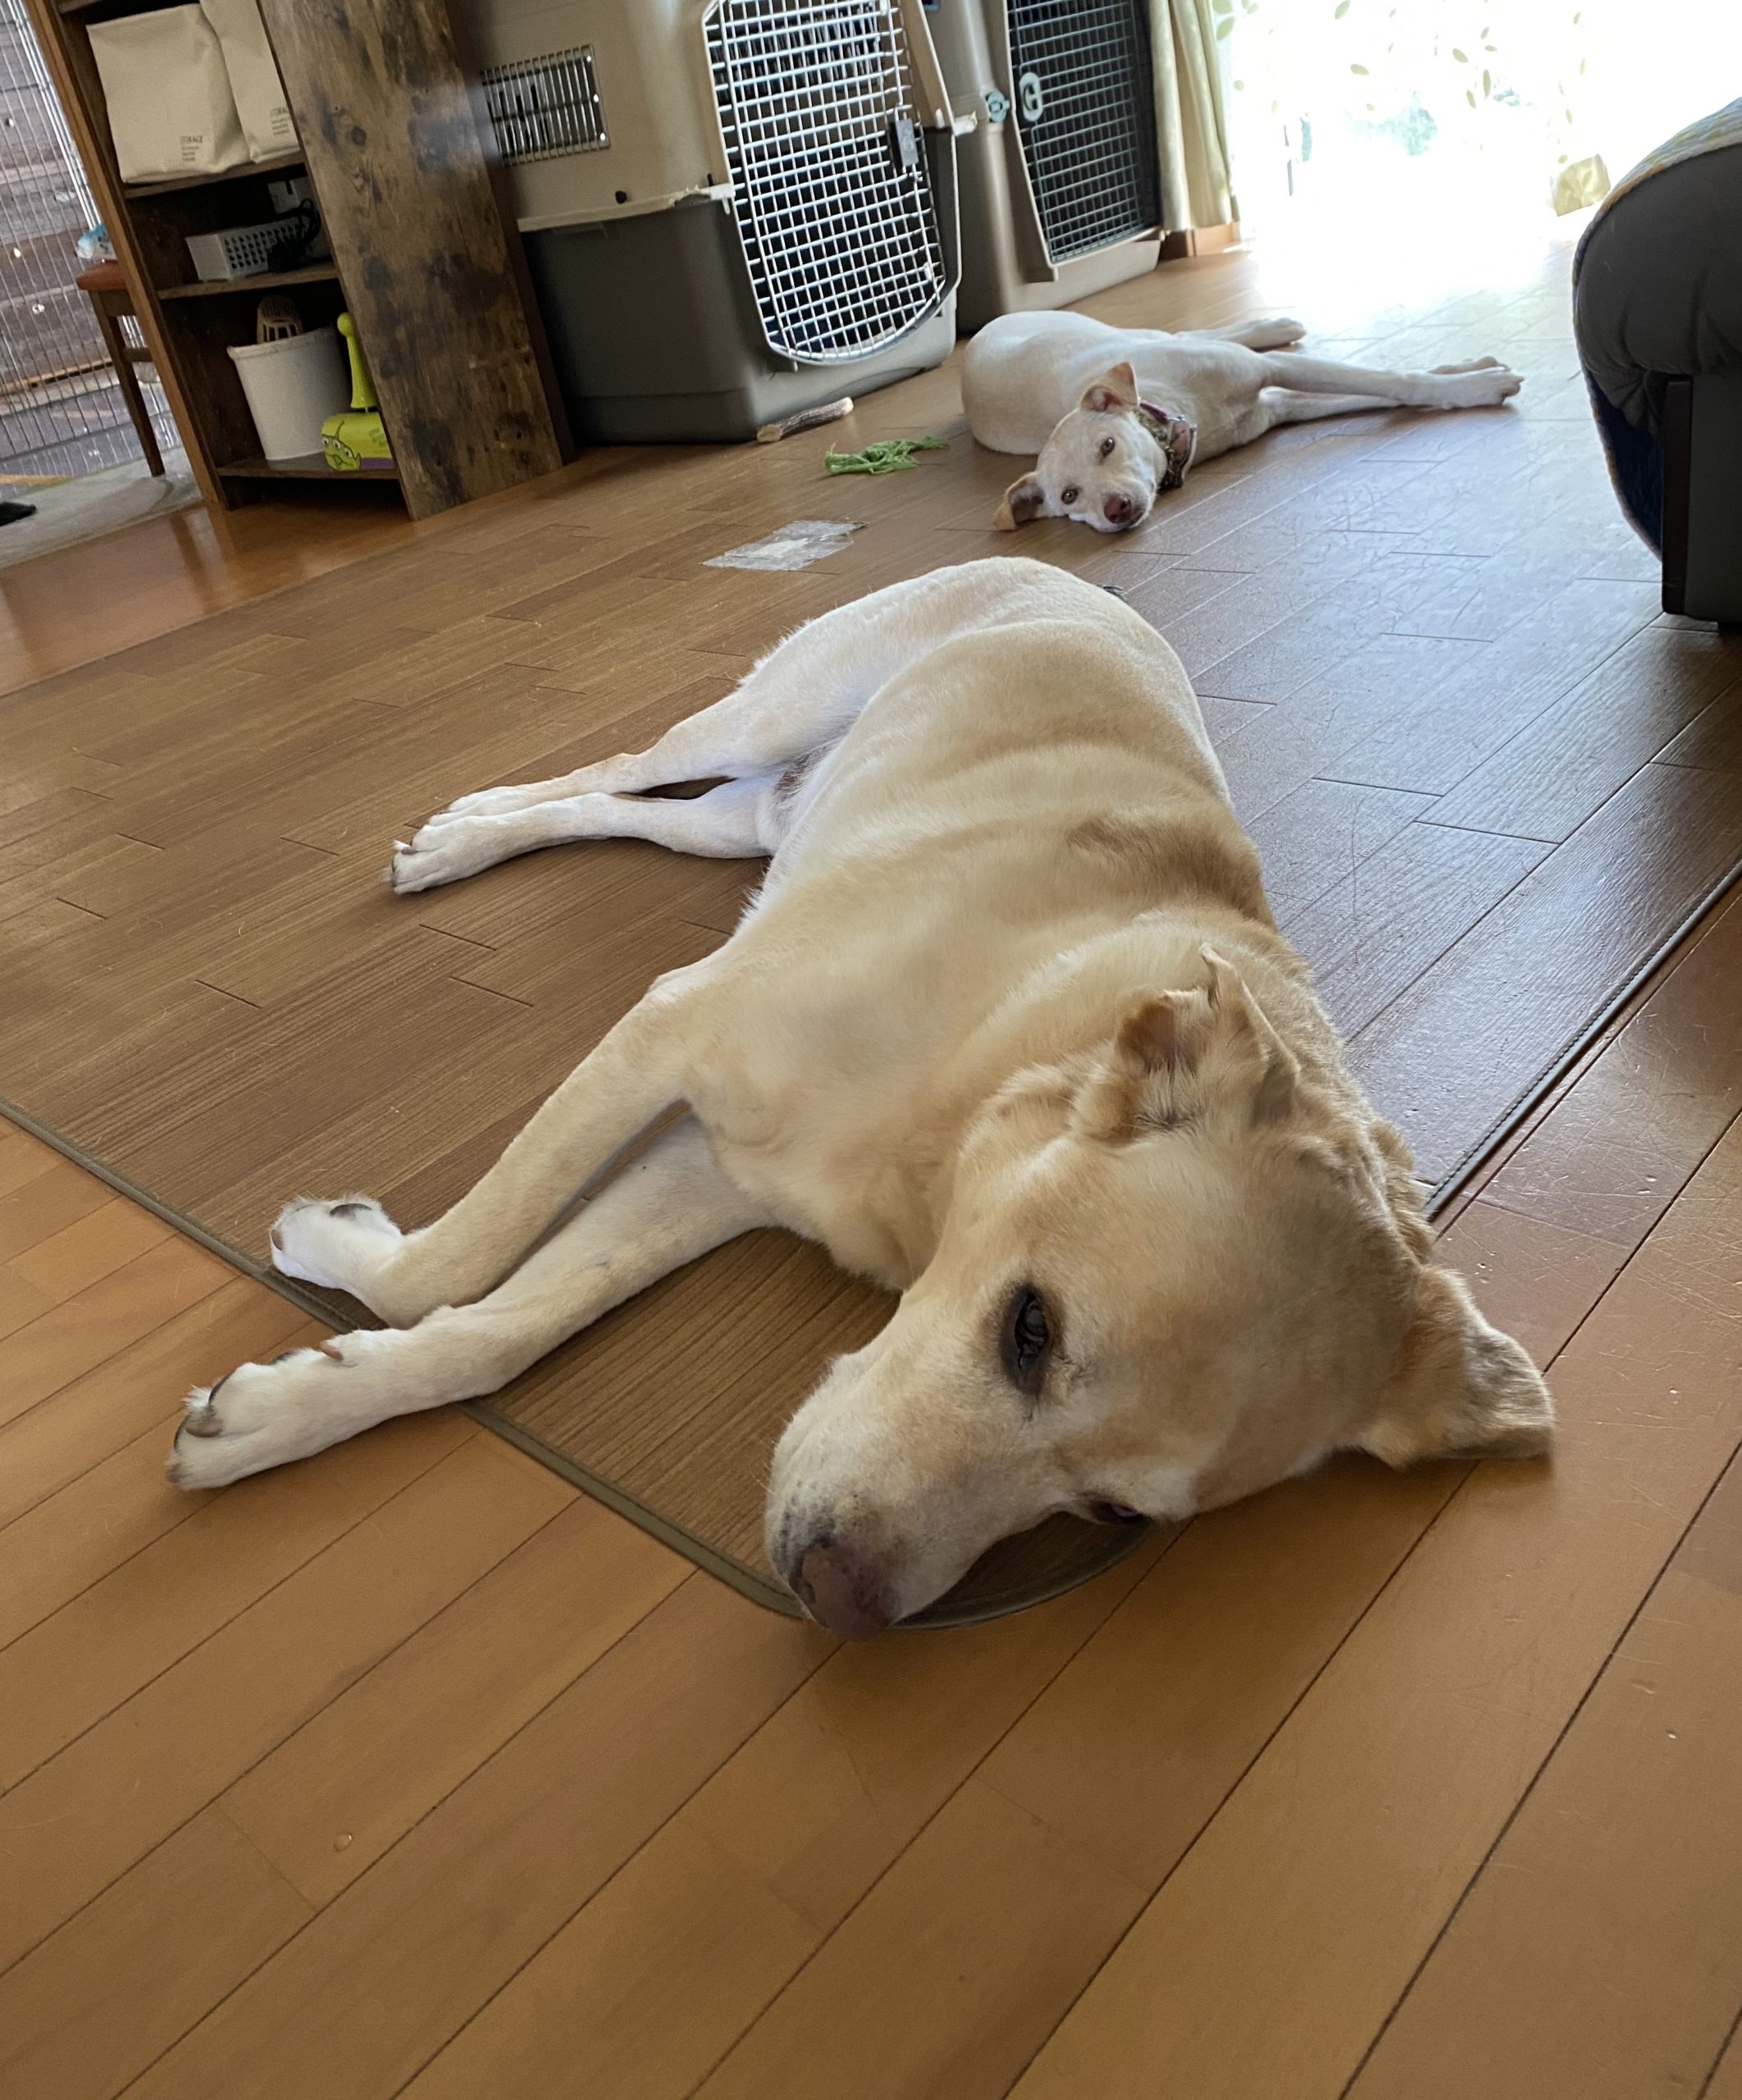 のびのび っと昼寝中 と 茨城センターの犬たち チャコまま 茨城 犬の里親探し 保護犬活動の個人ボランティア